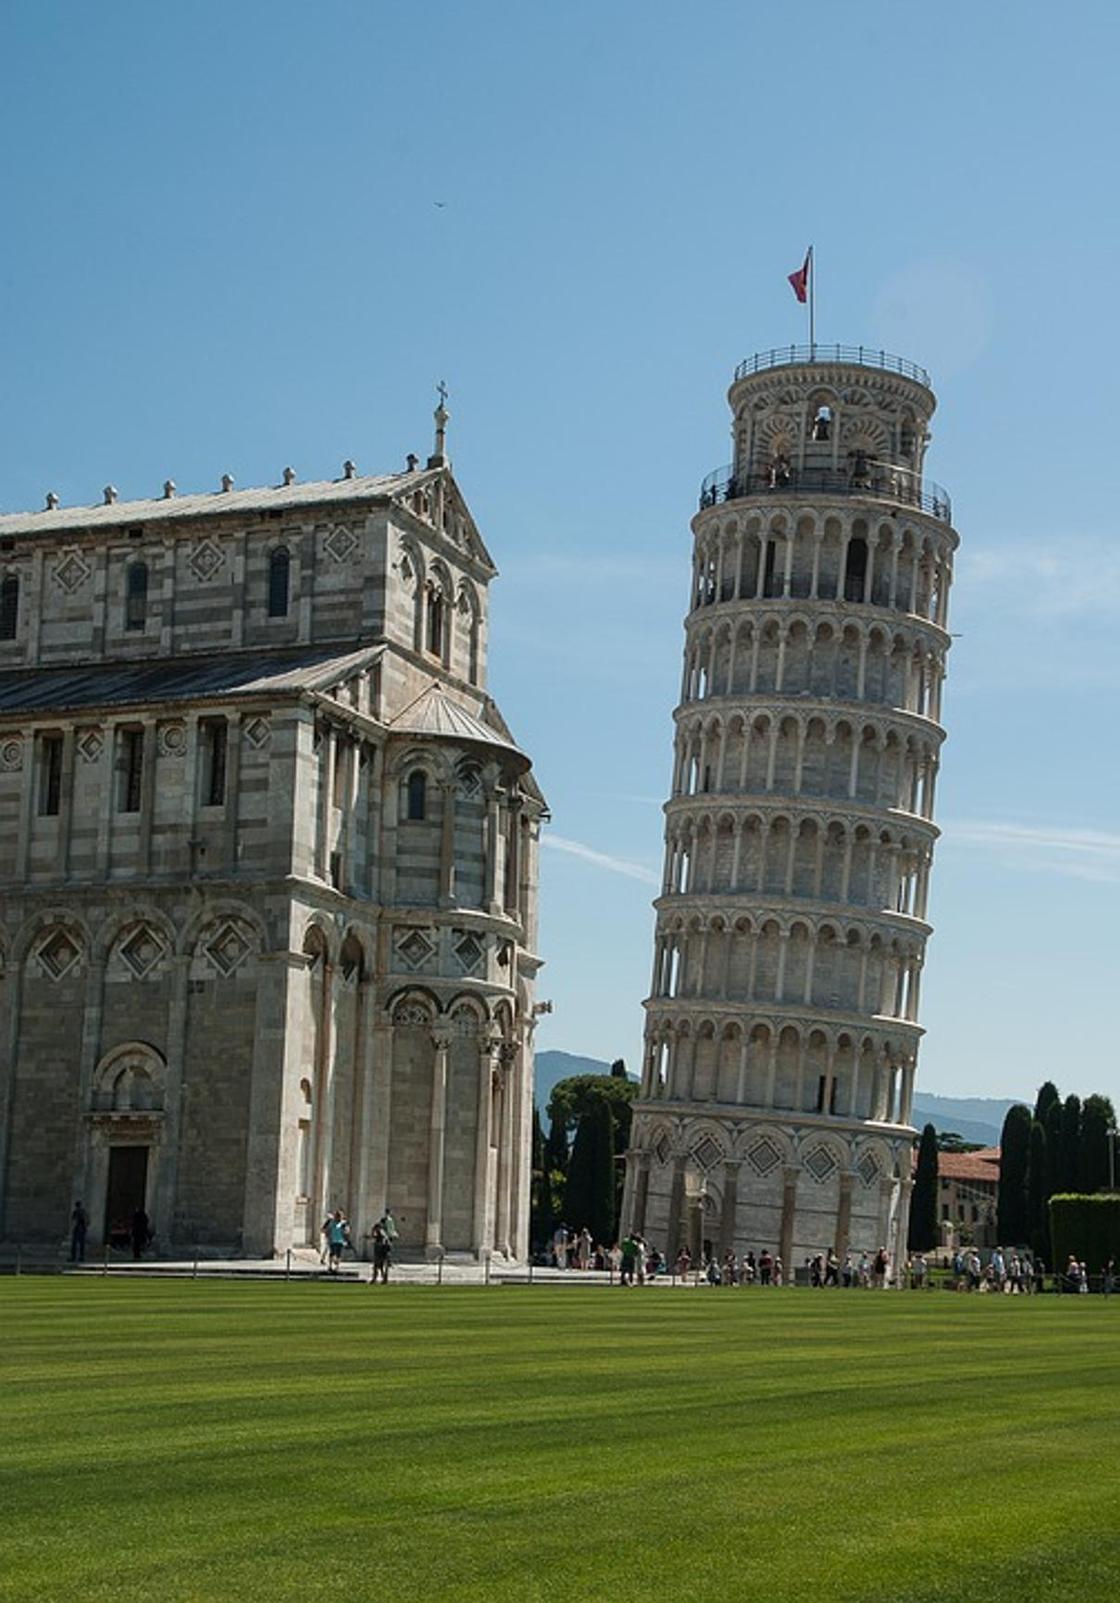 Пизанская башня в Италии: где находится, фото, история